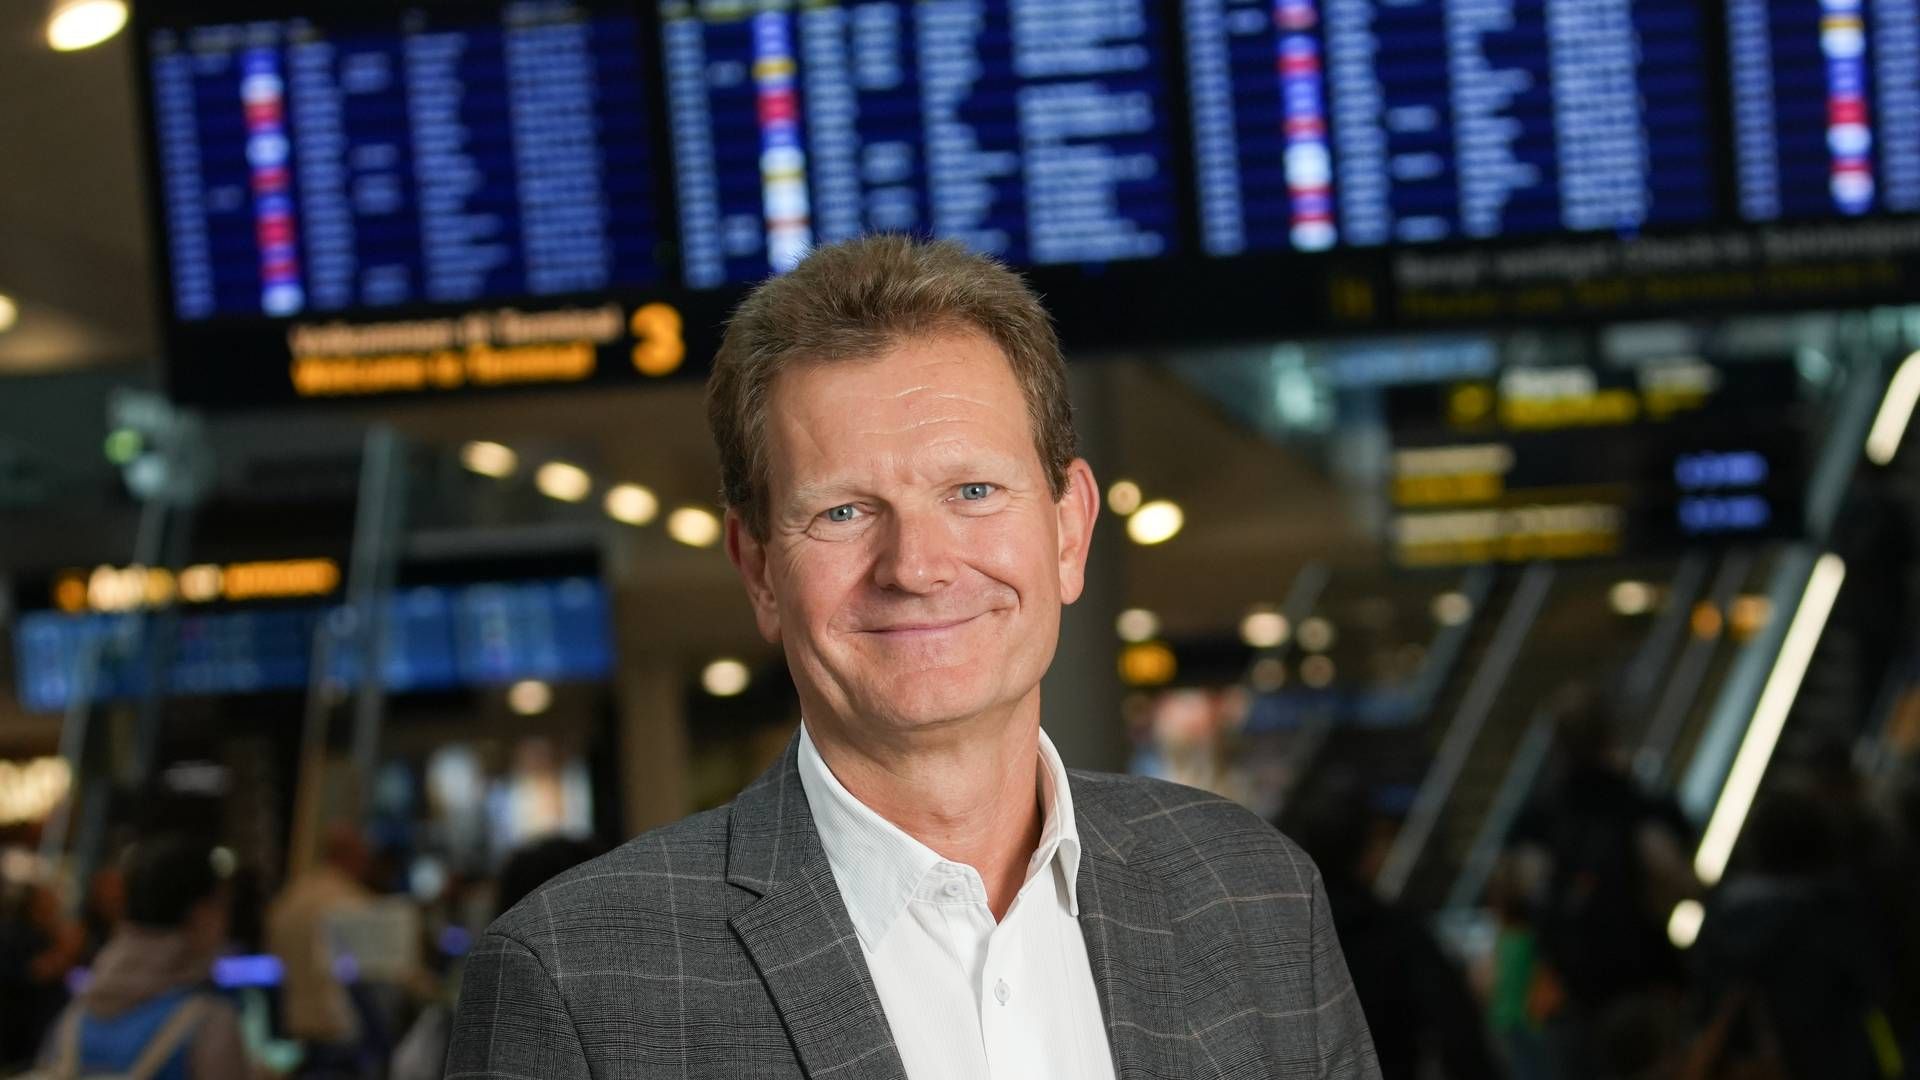 Christian Poulsen er udpeget som ny adm. direktør. | Foto: Pr / Københavns Lufthavne